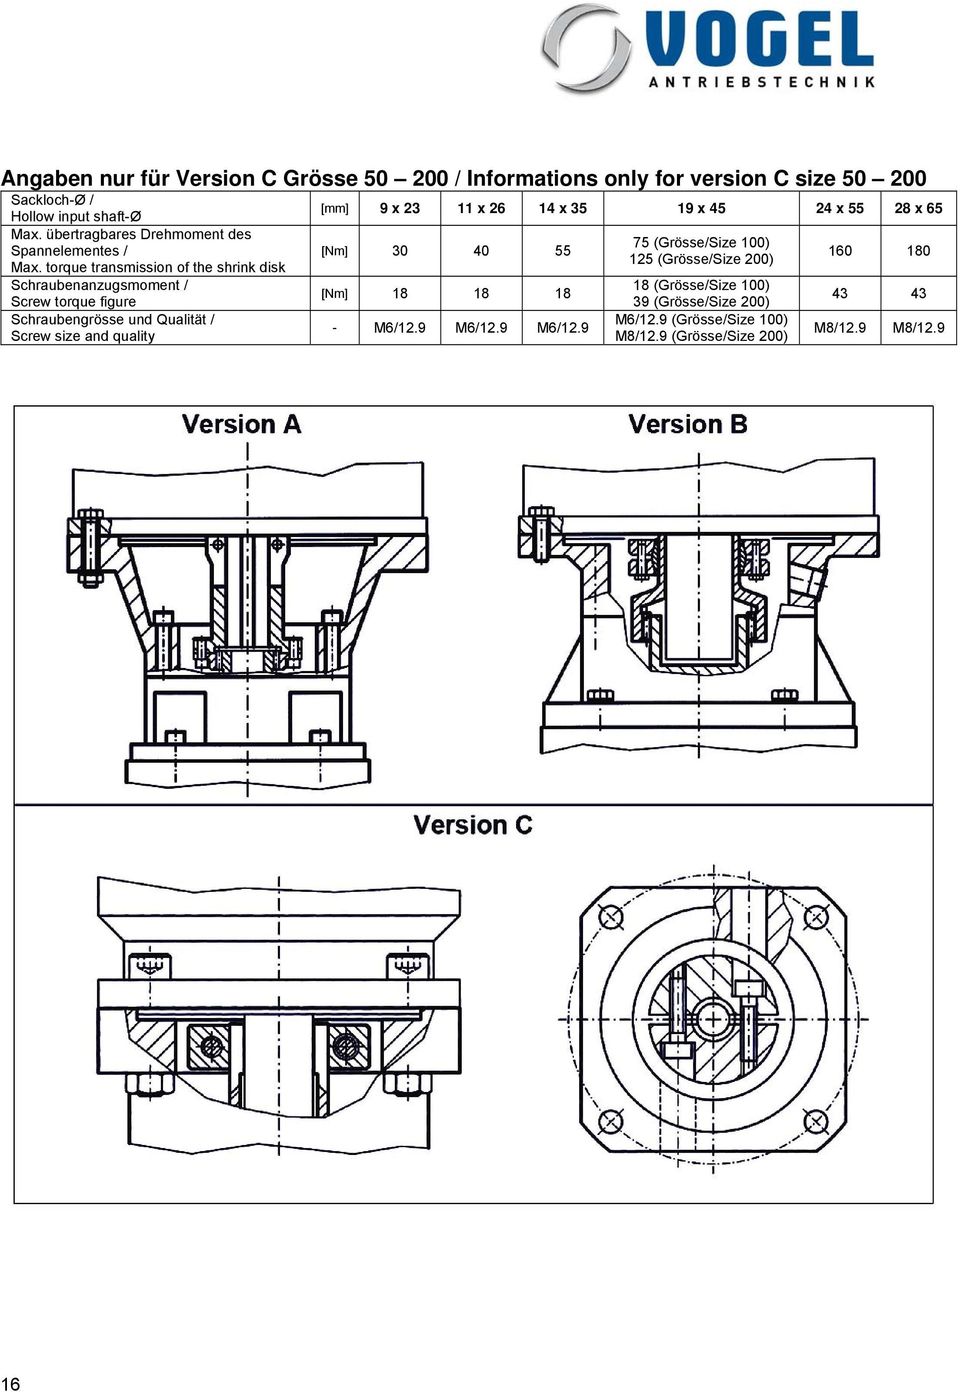 torque transmission of the shrink disk Schraubenanzugsmoment / Screw torque figure Schraubengrösse und Qualität / Screw size and quality [mm] 9 x